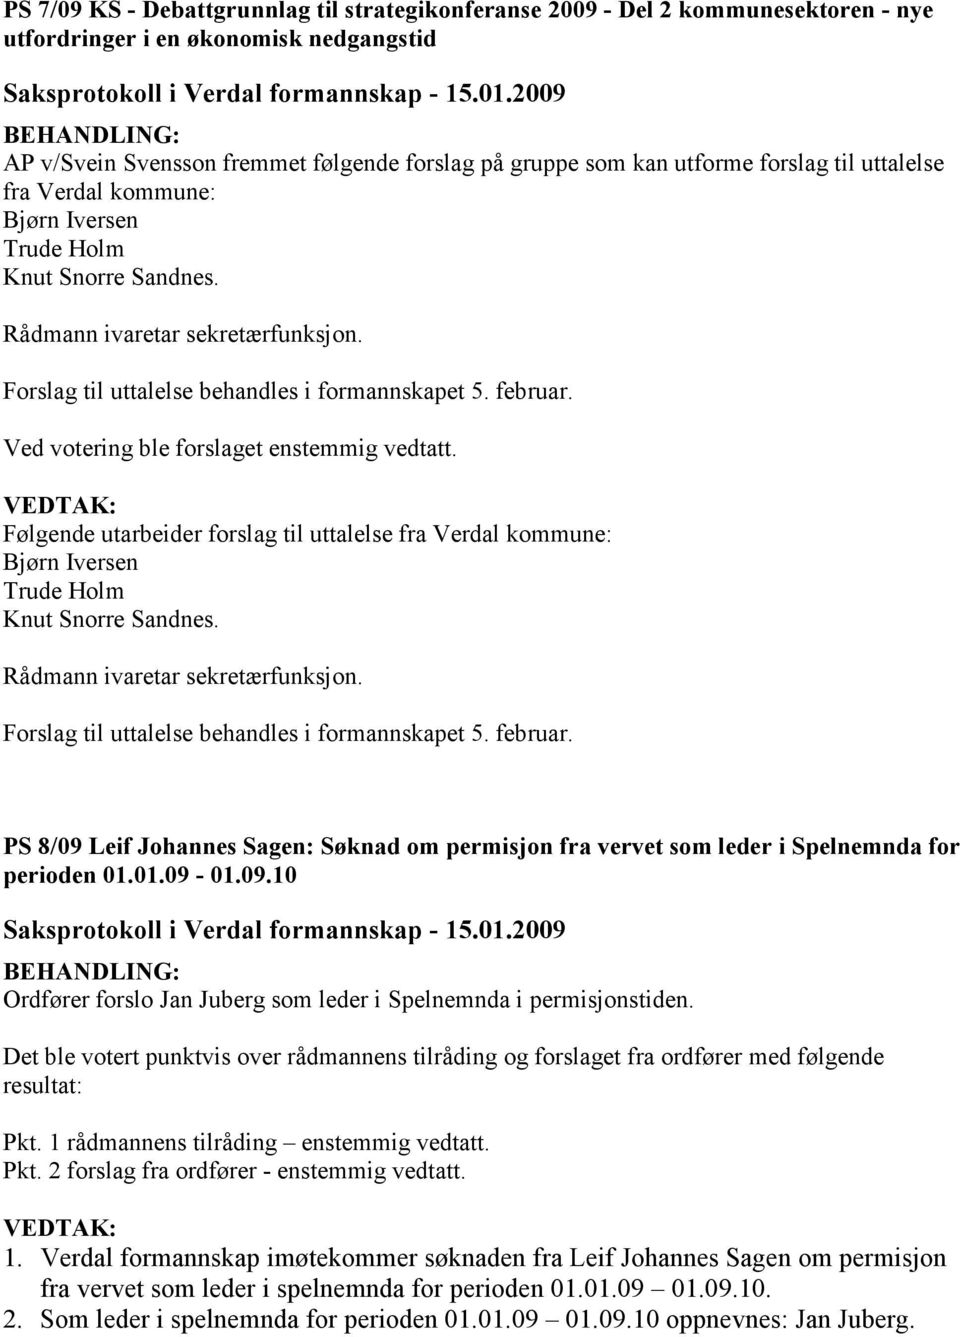 Ved votering ble forslaget enstemmig vedtatt. Følgende utarbeider  PS 8/09 Leif Johannes Sagen: Søknad om permisjon fra vervet som leder i Spelnemnda for perioden 01.01.09-01.09.10 Ordfører forslo Jan Juberg som leder i Spelnemnda i permisjonstiden.